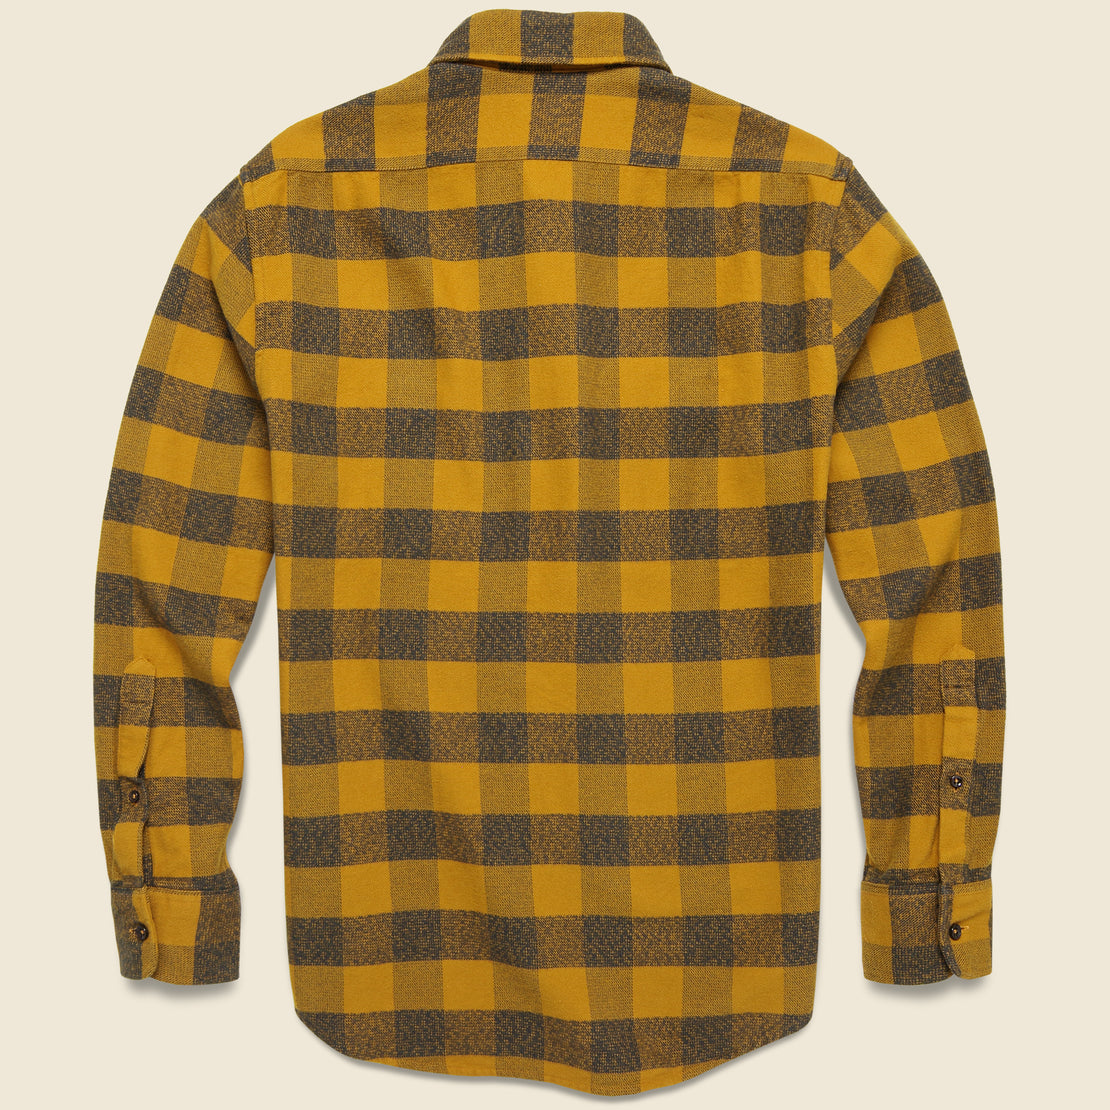 Yosemite Shirt - Saffron Buffalo Check - Taylor Stitch - STAG Provisions - Tops - L/S Woven - Plaid